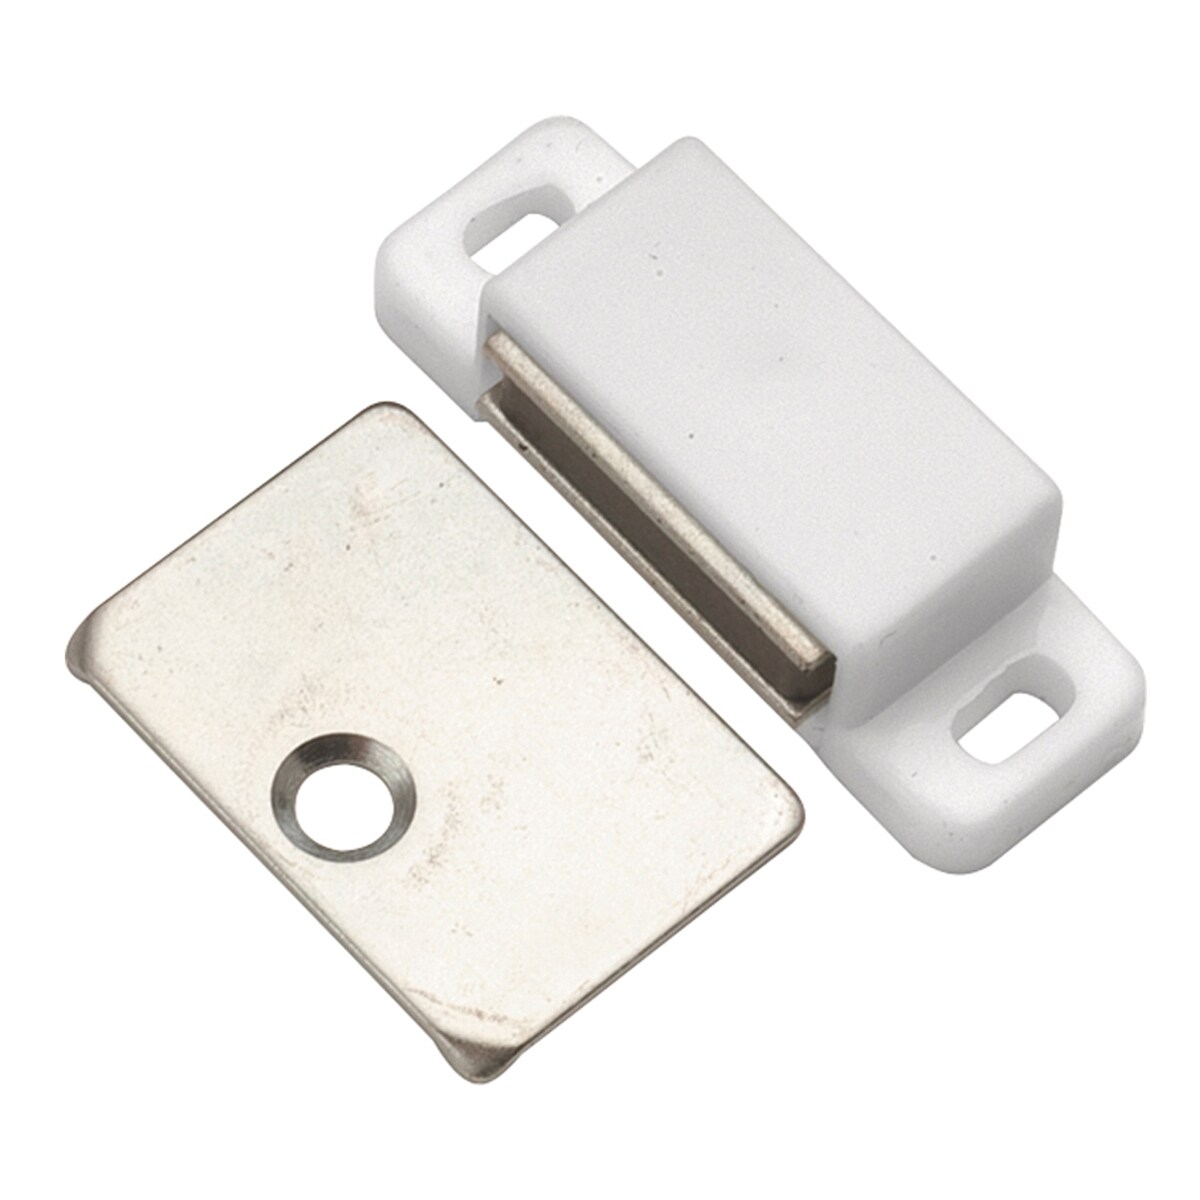 ANZAGA Cupboard Locks, 2pcs Cabinet Magnetic Catch, Cabinet Door Catches,  Door Magnet Closure, Adhesive Door Magnet for Cupboard